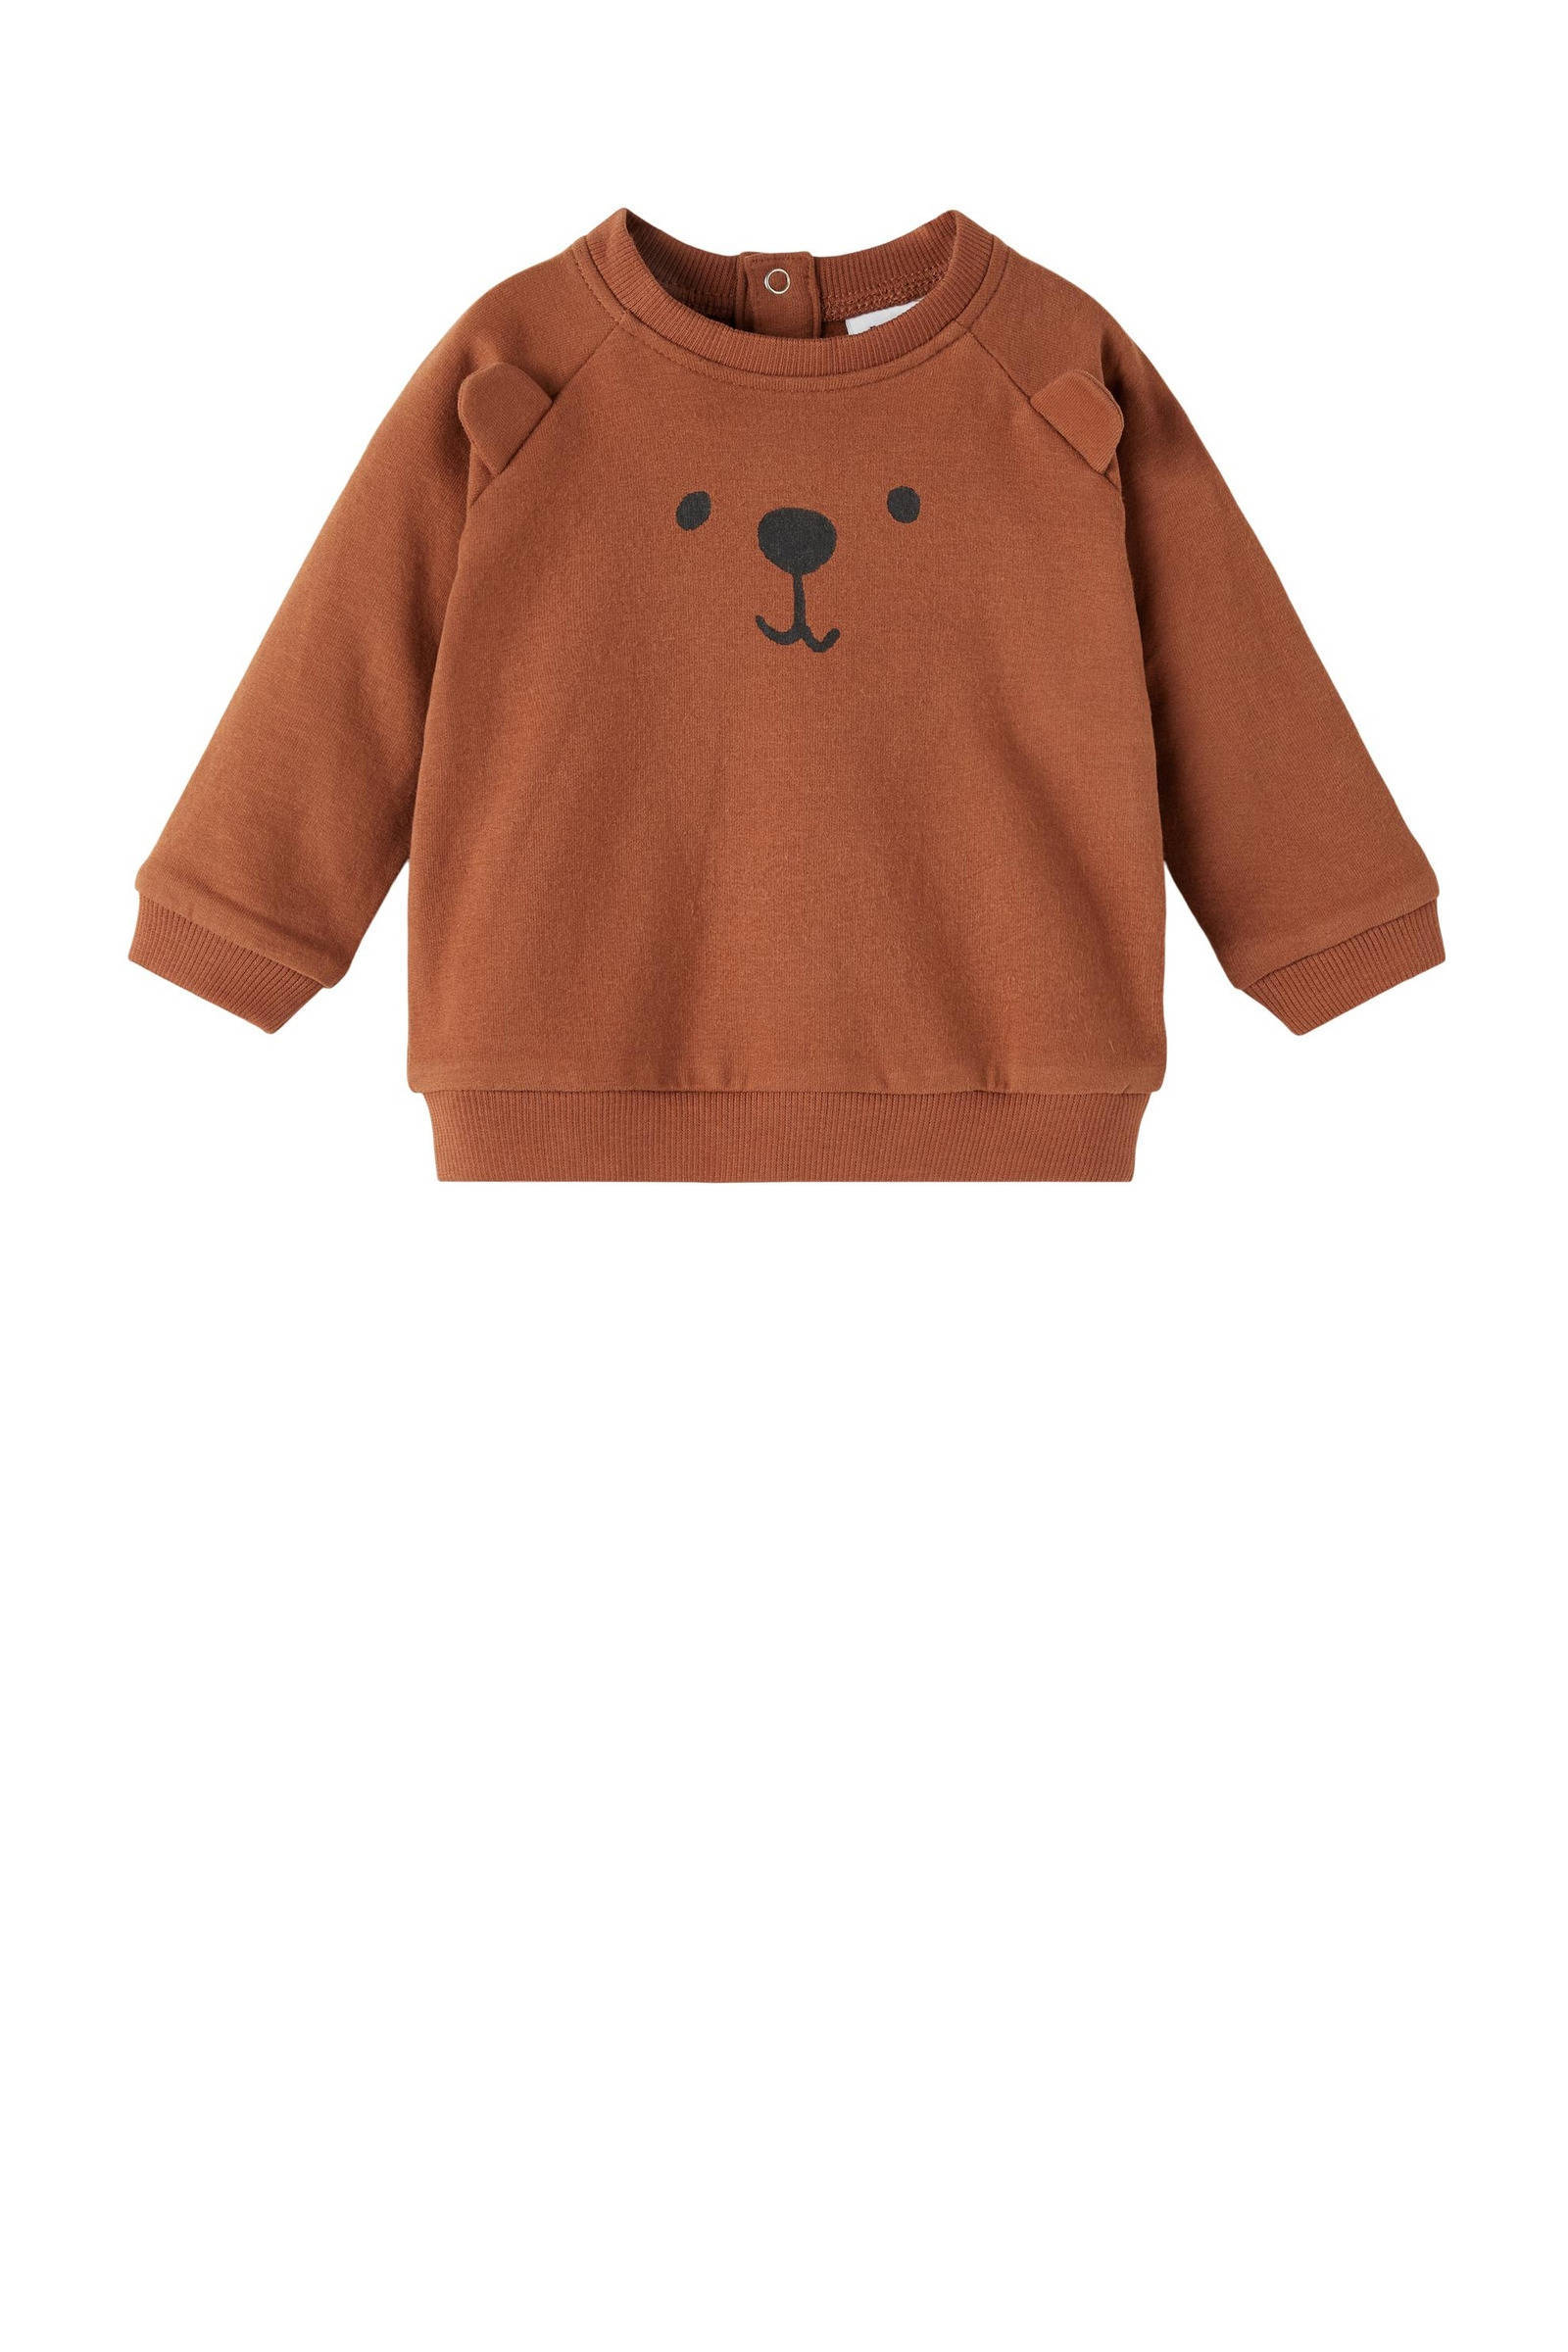 Kleding Jongenskleding Babykleding voor jongens Truien zandstrand handgespende handgebreide baby trui 